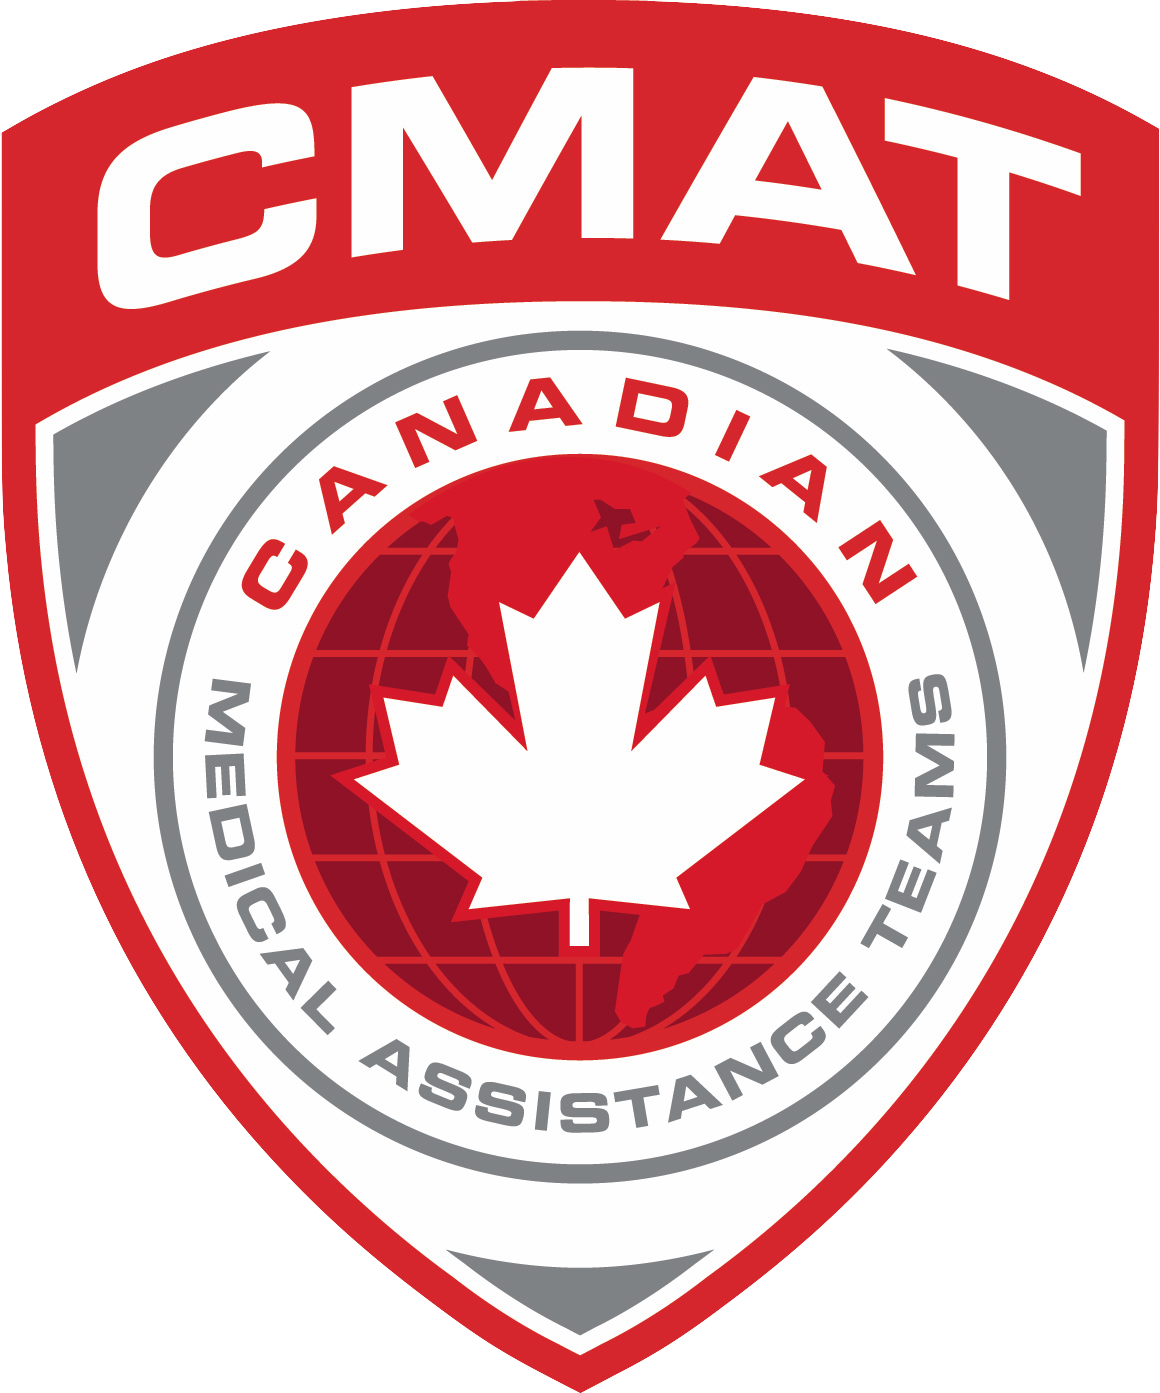 Équipes Canadiennes d'Assistance Médicale (CMAT) logo